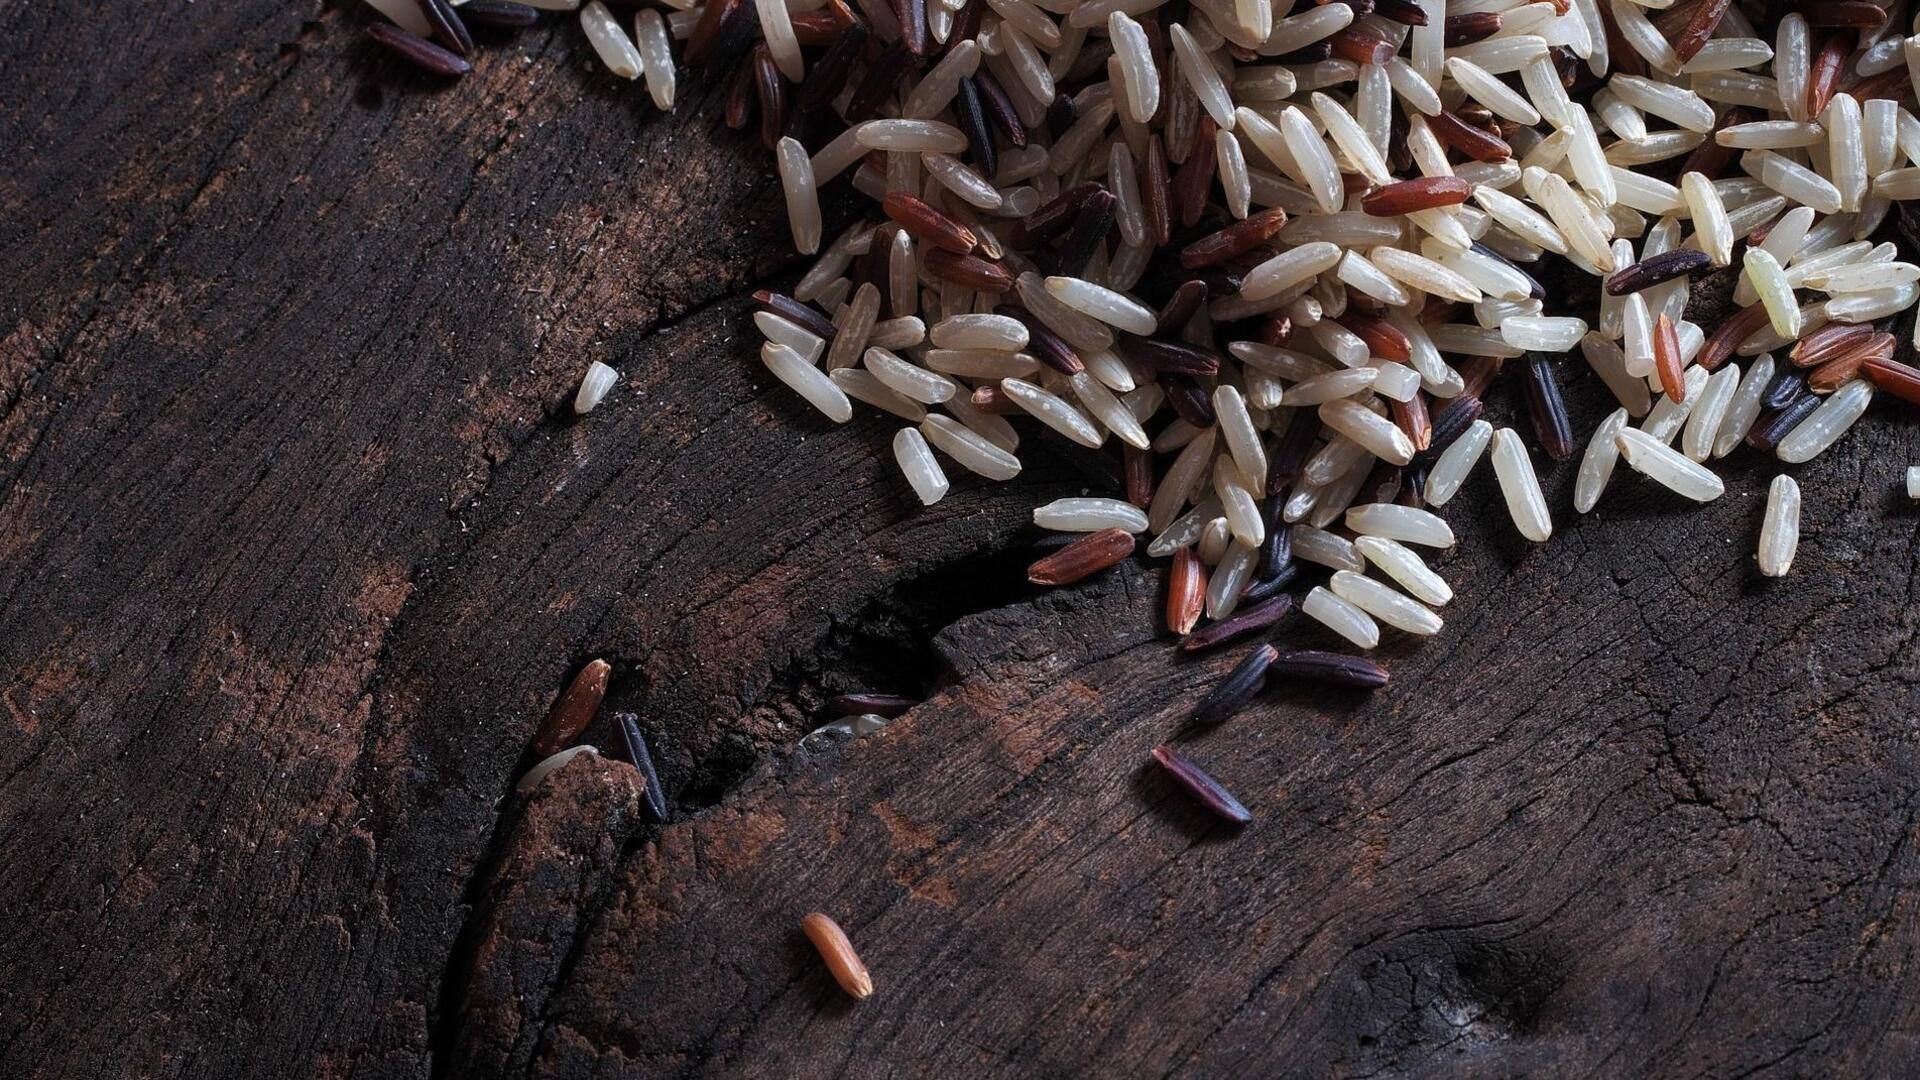 भूरे चावल सेहत के लिए है फायदेमंद, इन व्यंजनों की रेसिपी से डाइट में करें शामिल